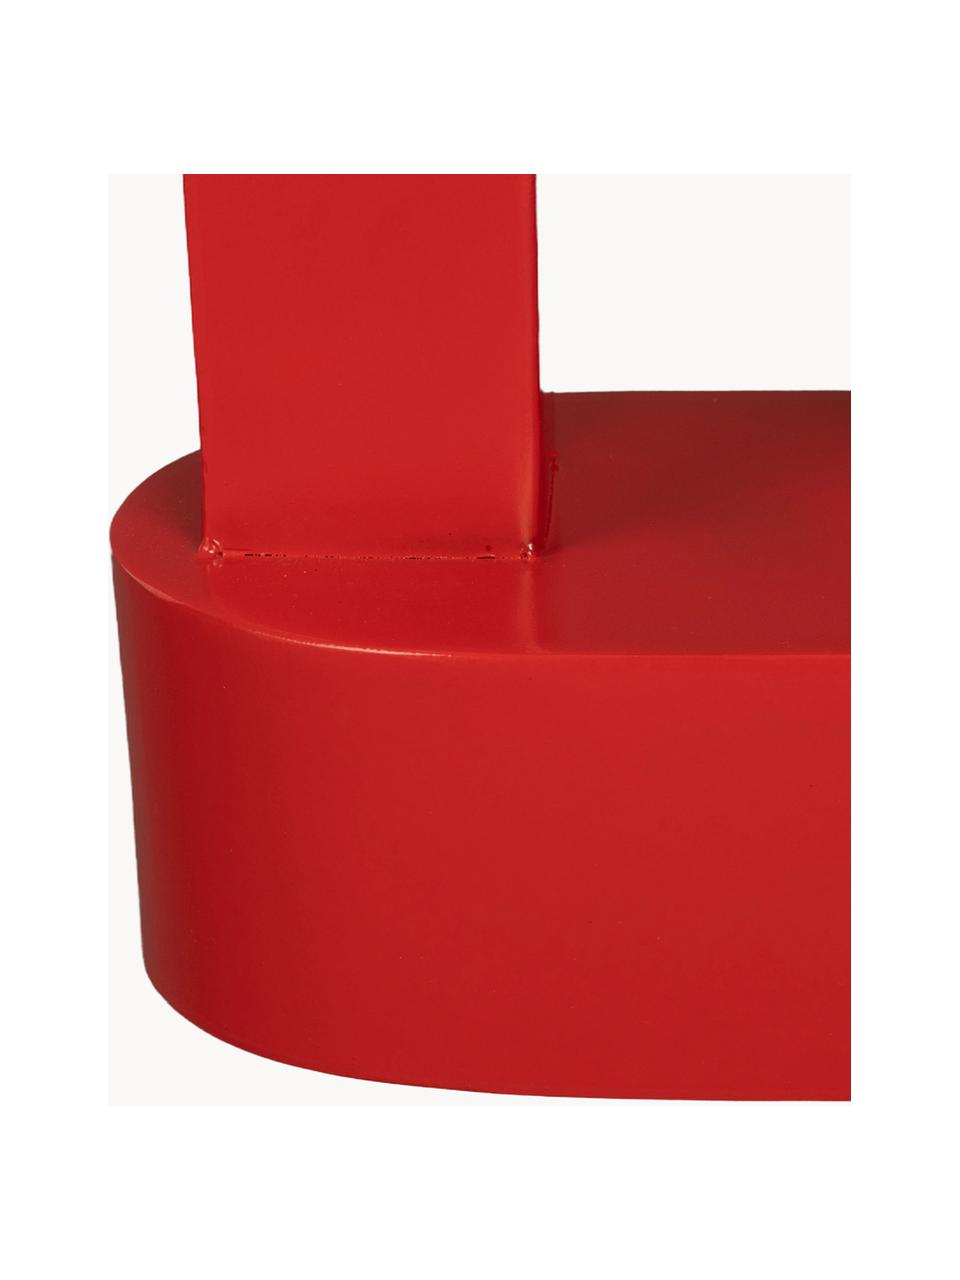 Mesa auxiliar ovalada de metal Magenta, Metal recubierto, Rojo, An 36 x Al 47 cm